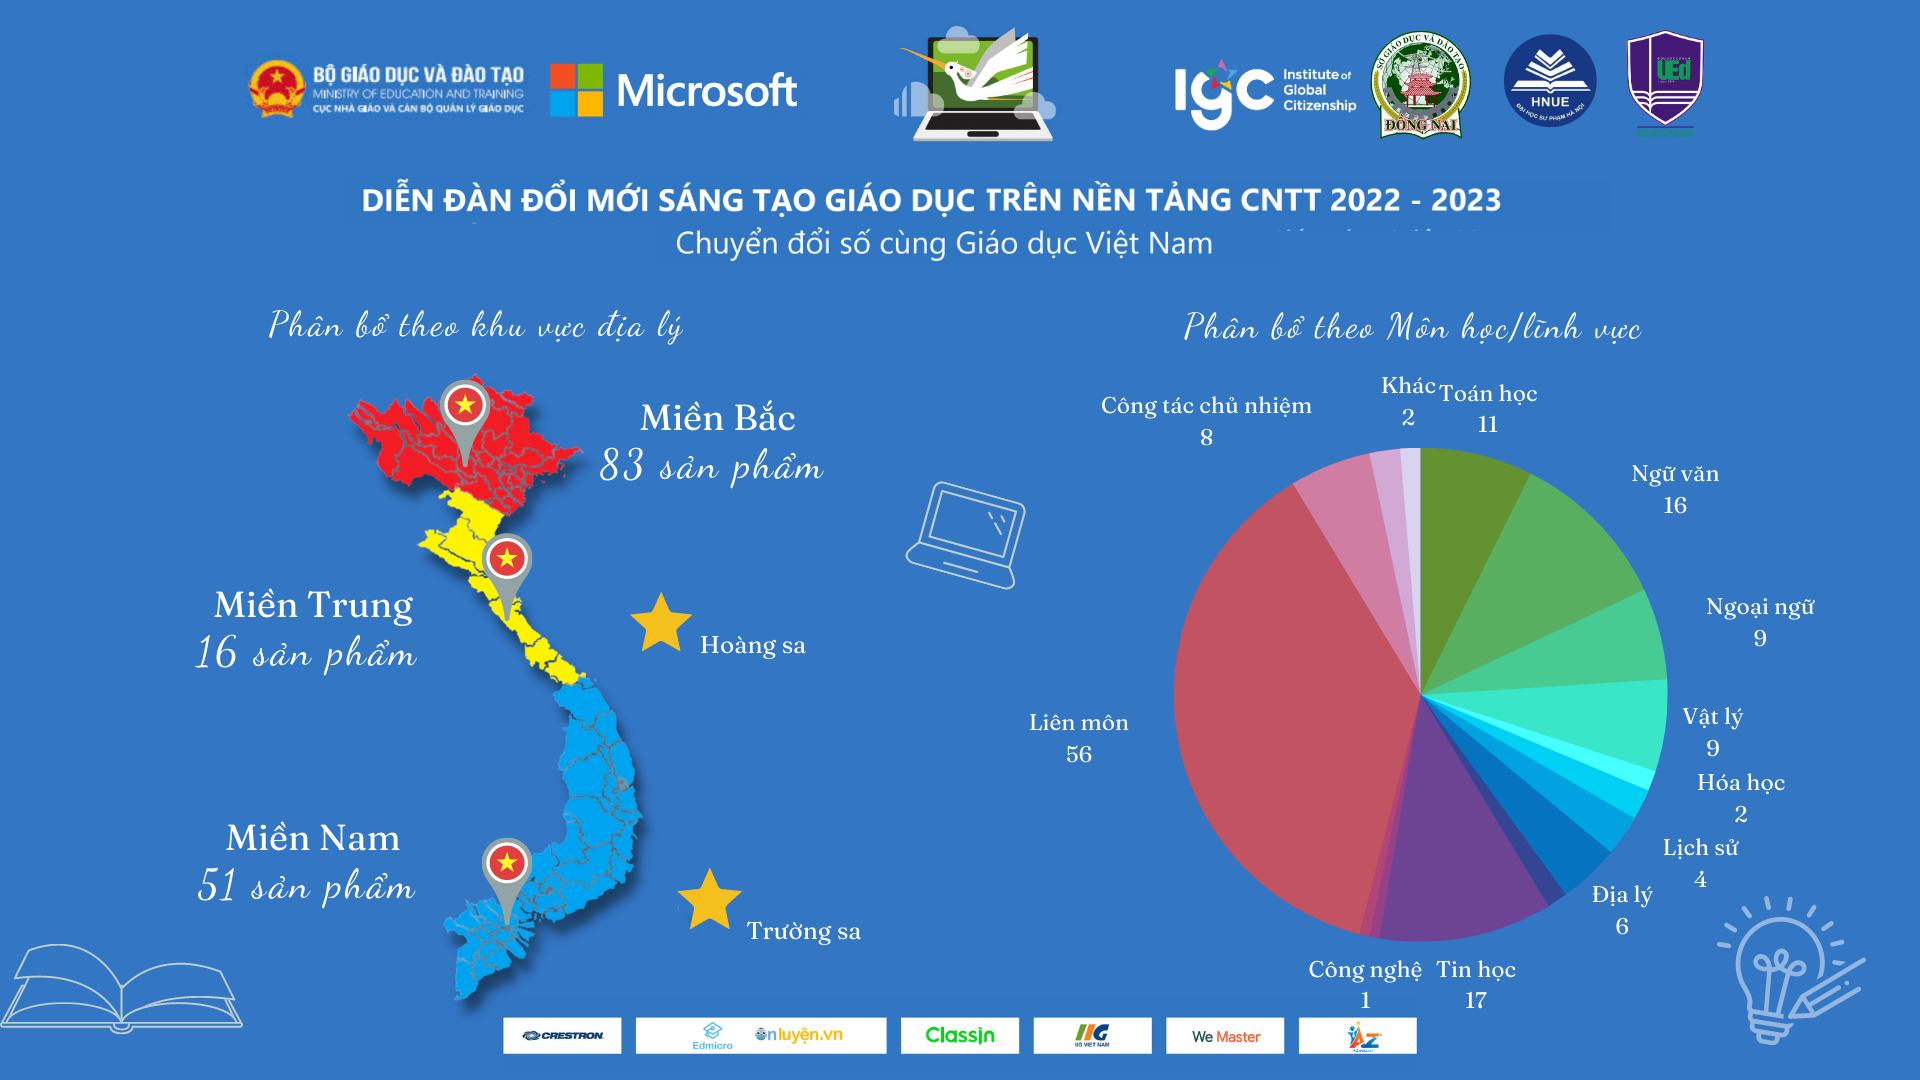 Chúc mừng 27 dự án của thầy cô IGC đạt top 150 sản phẩm xuất sắc nhất diễn đàn E2 Việt Nam